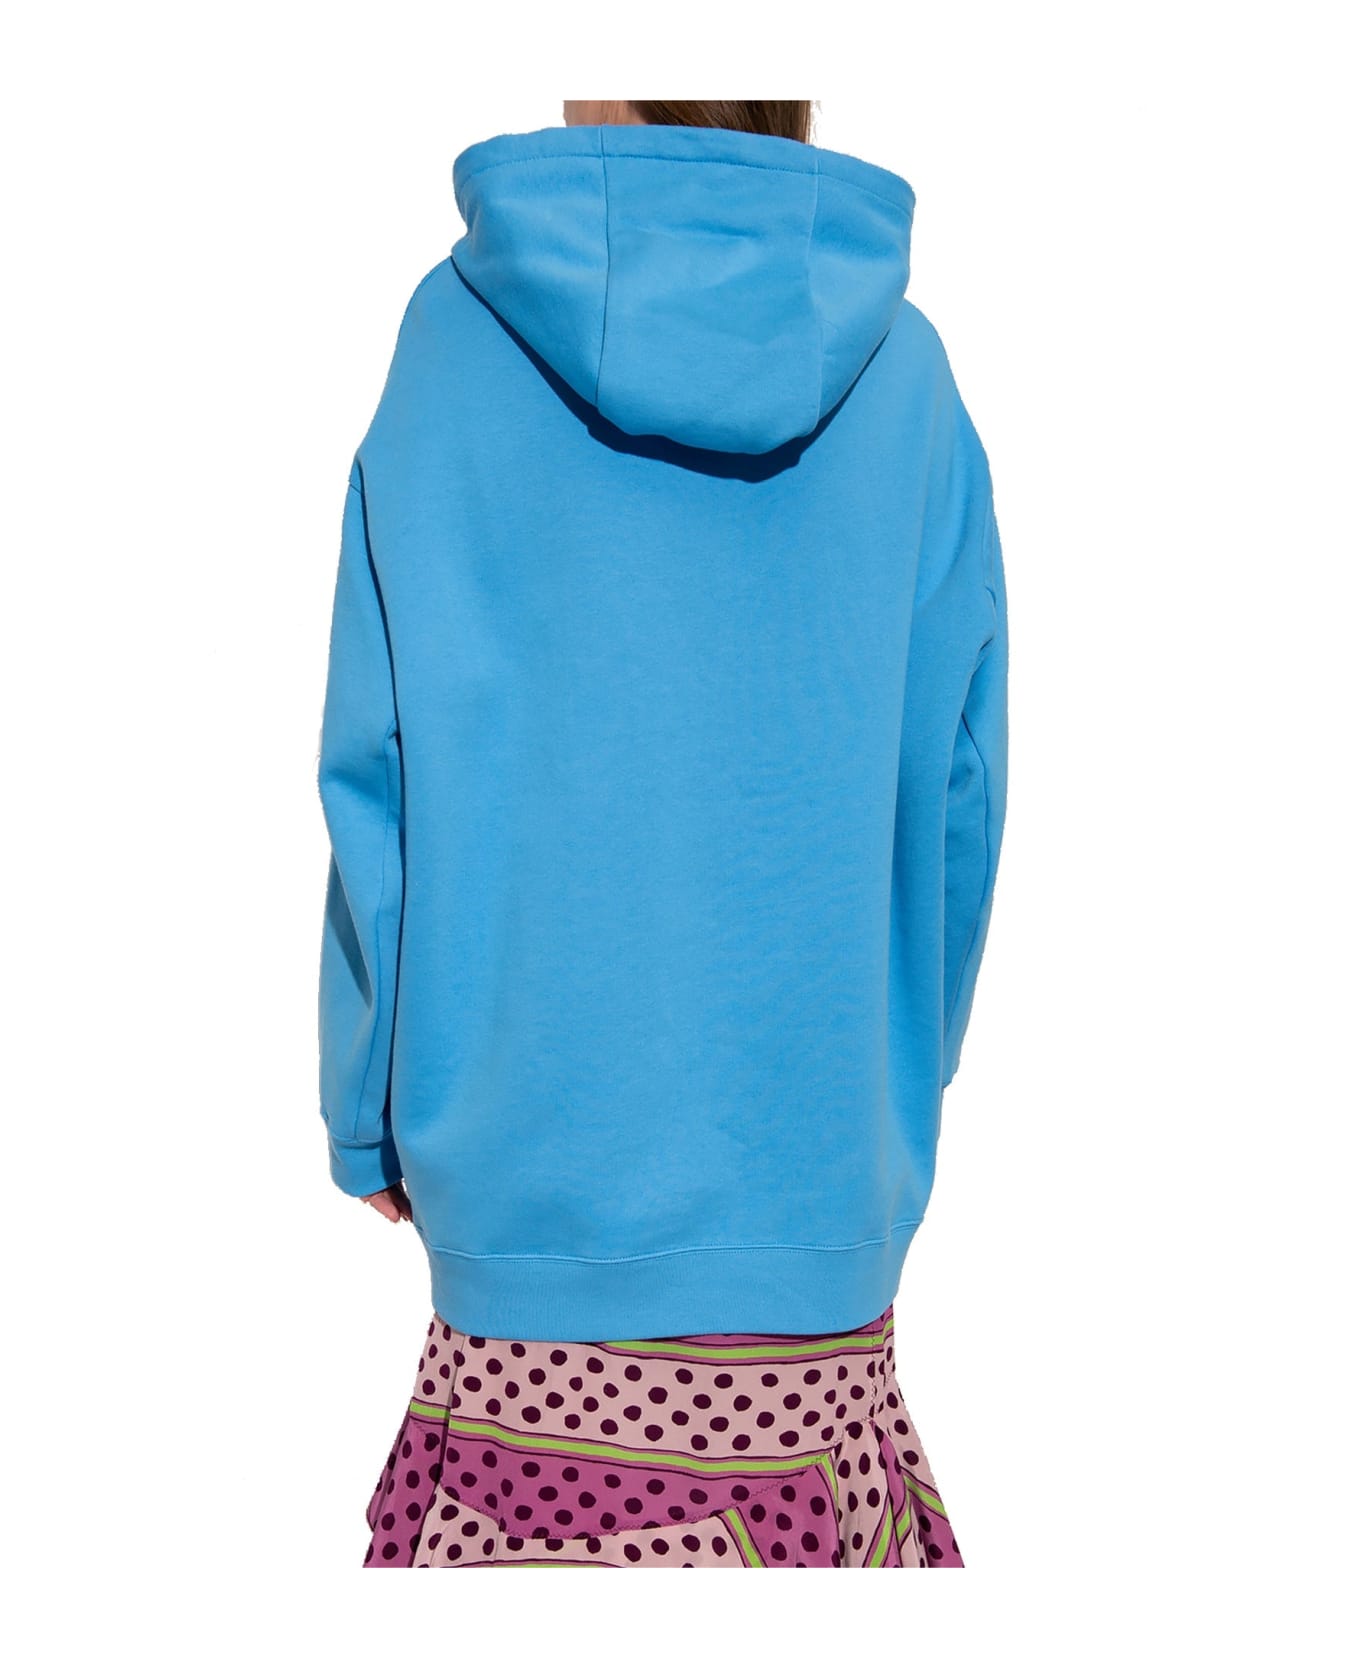 Marni Oversize Hooded Sweatshirt - Blue